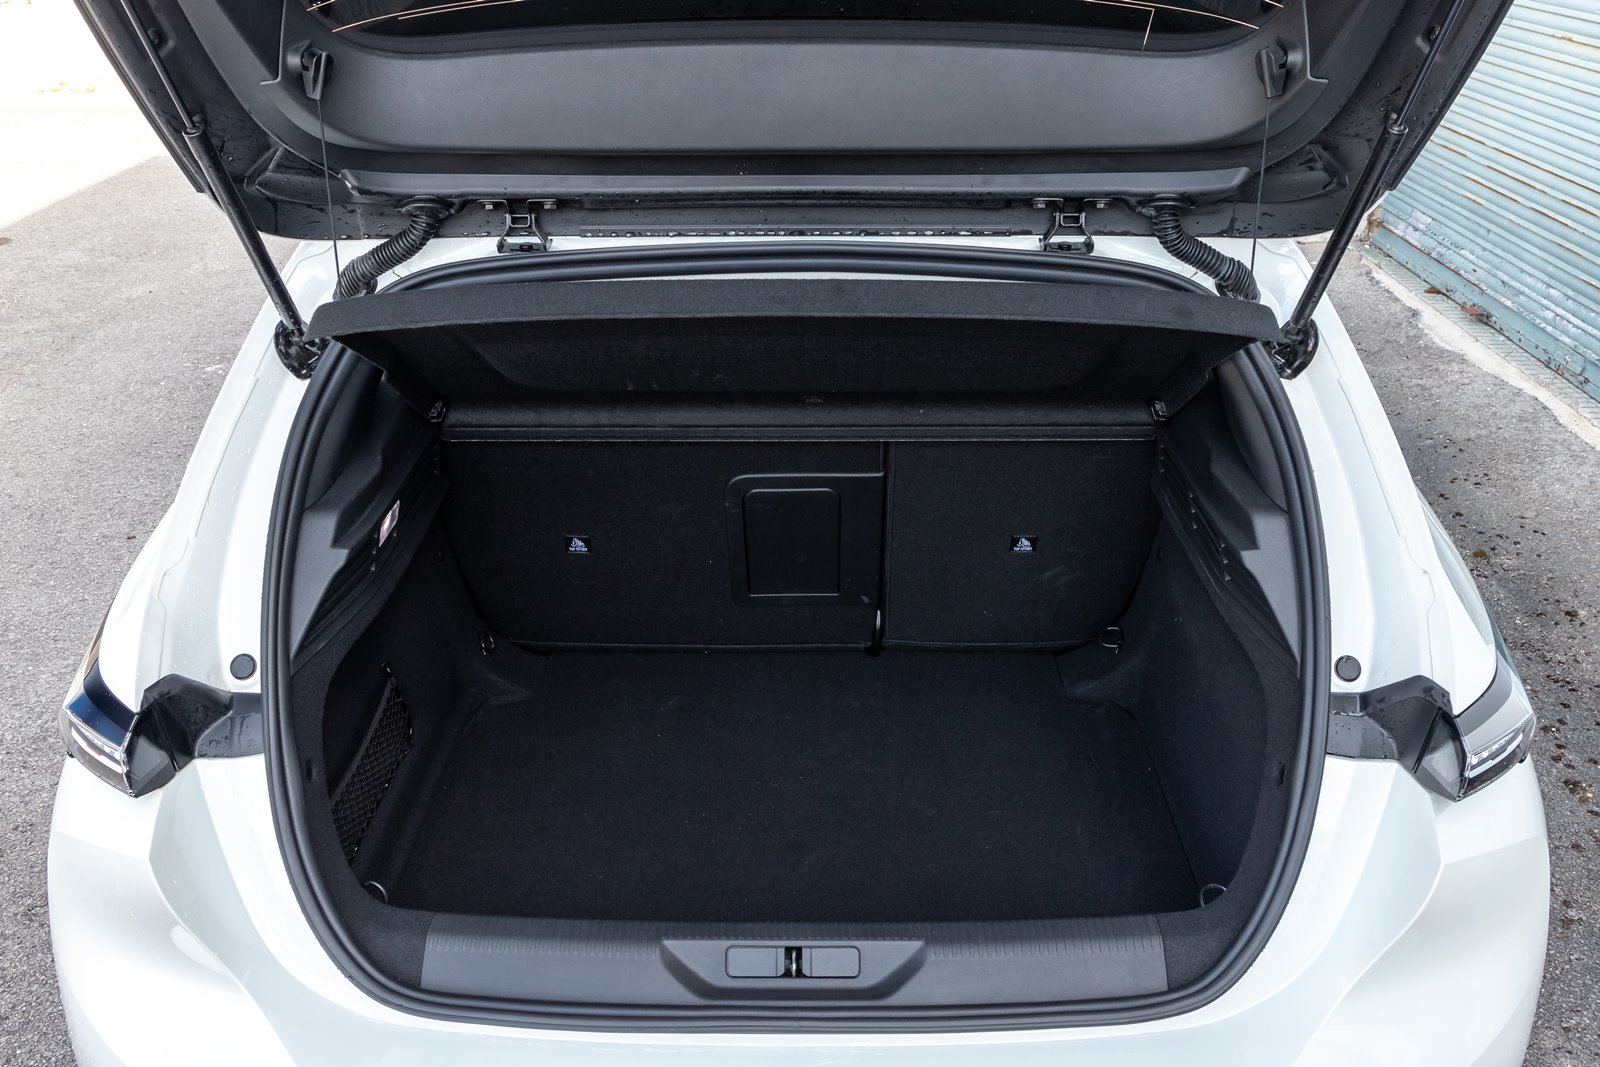 Basic Peugeot ¿Quiere comprar una alfombrilla de maletero para 308 CC? Haga  su pedido ahora. Envío rápido